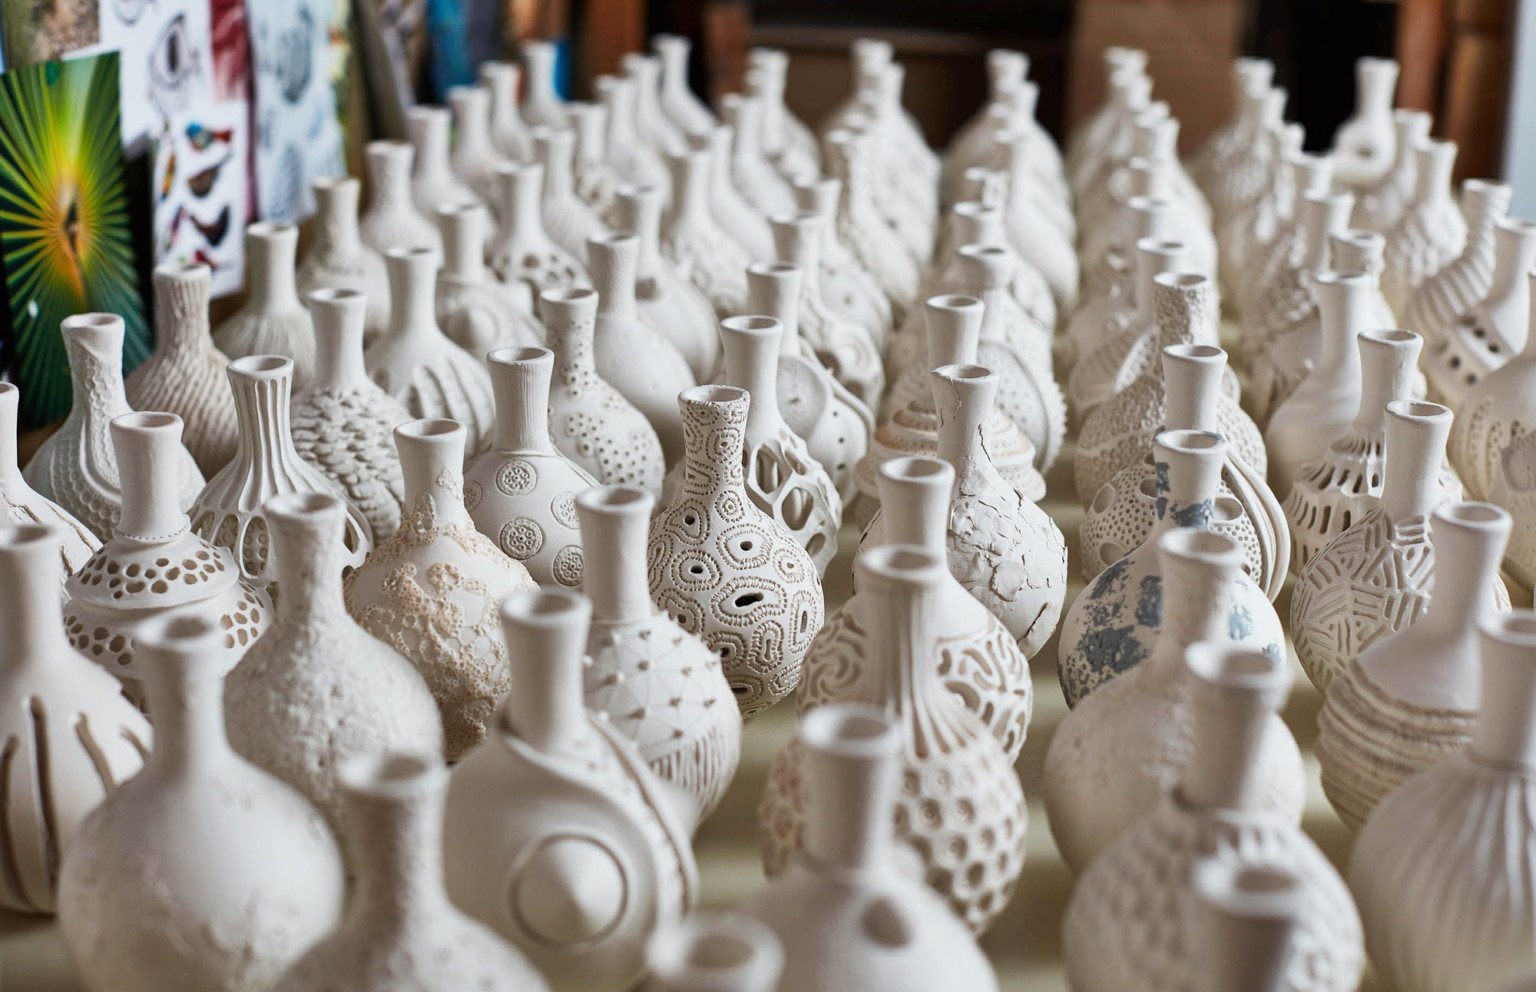 AnnaWhitehouse 2 cerámica arcilla artesanía reto arte 100días creatividad estimulante